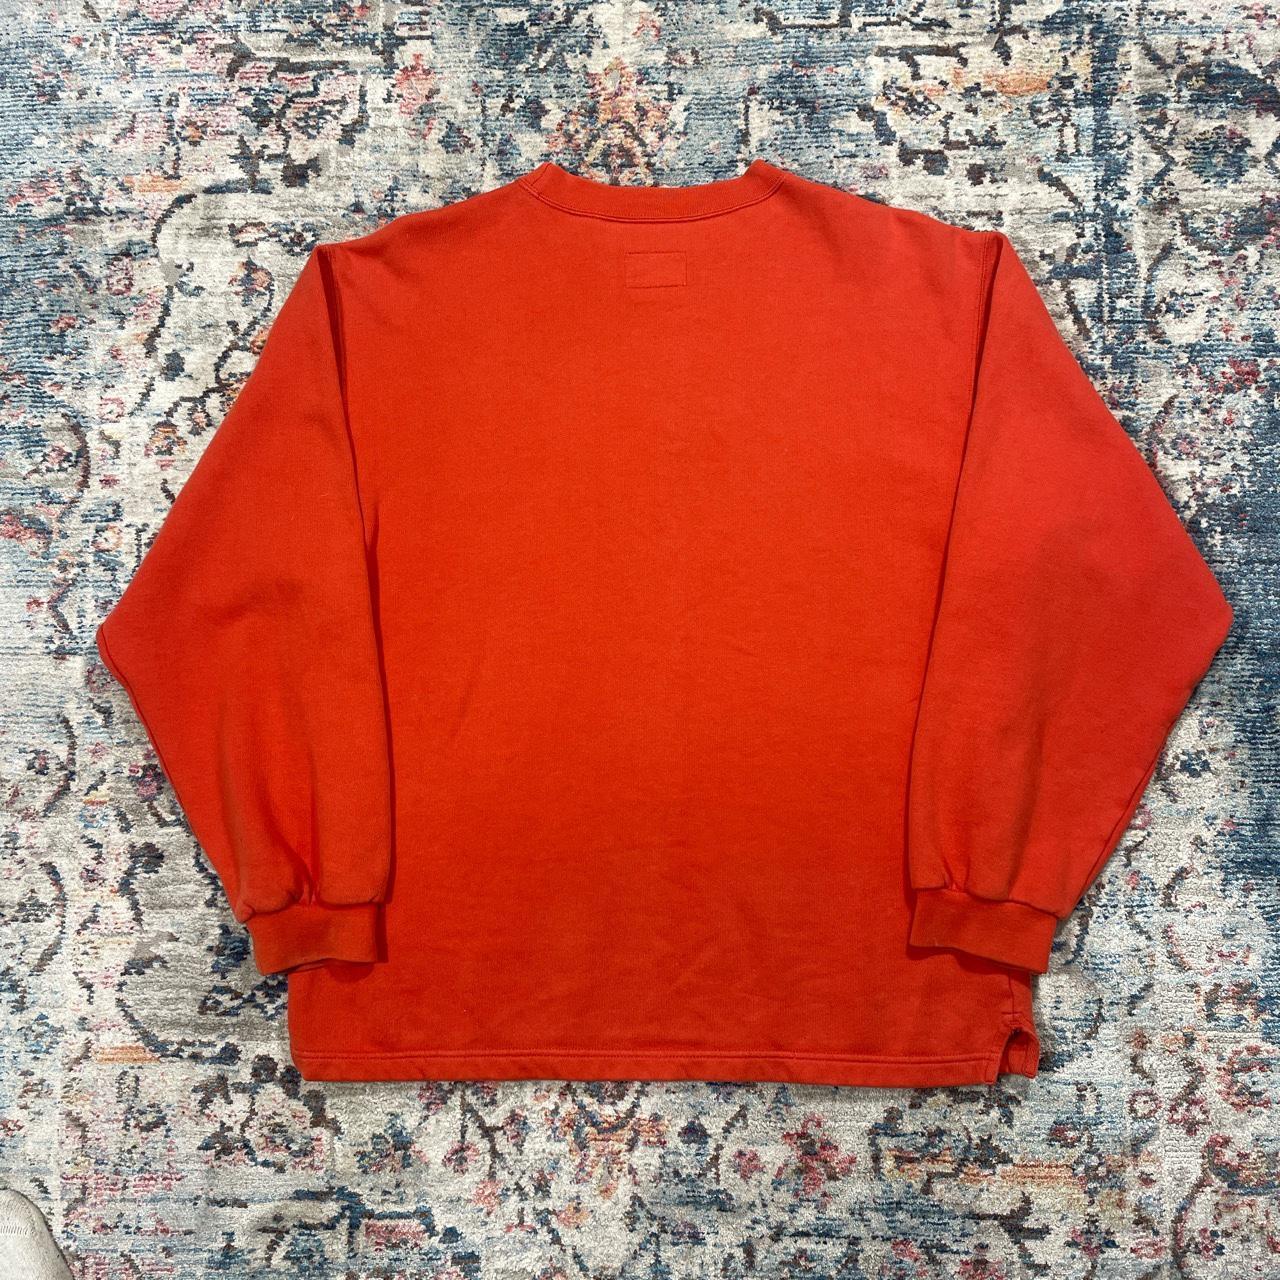 Vintage Nike Orange Sweatshirt